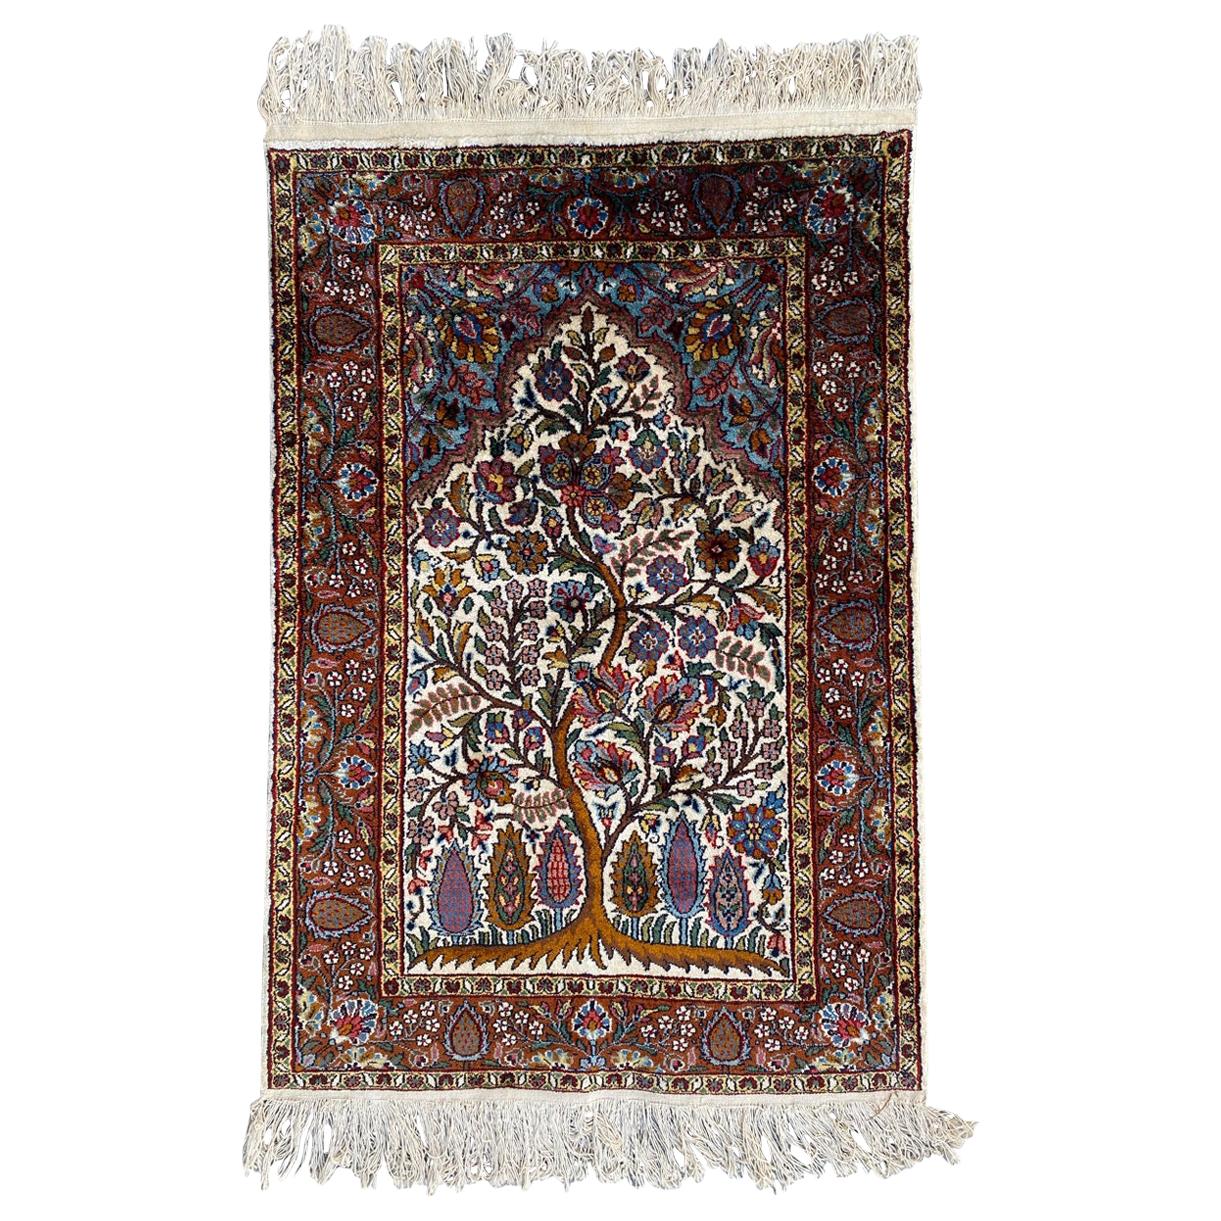 Wunderschöner kleiner indischer Vintage-Teppich aus feiner Seide